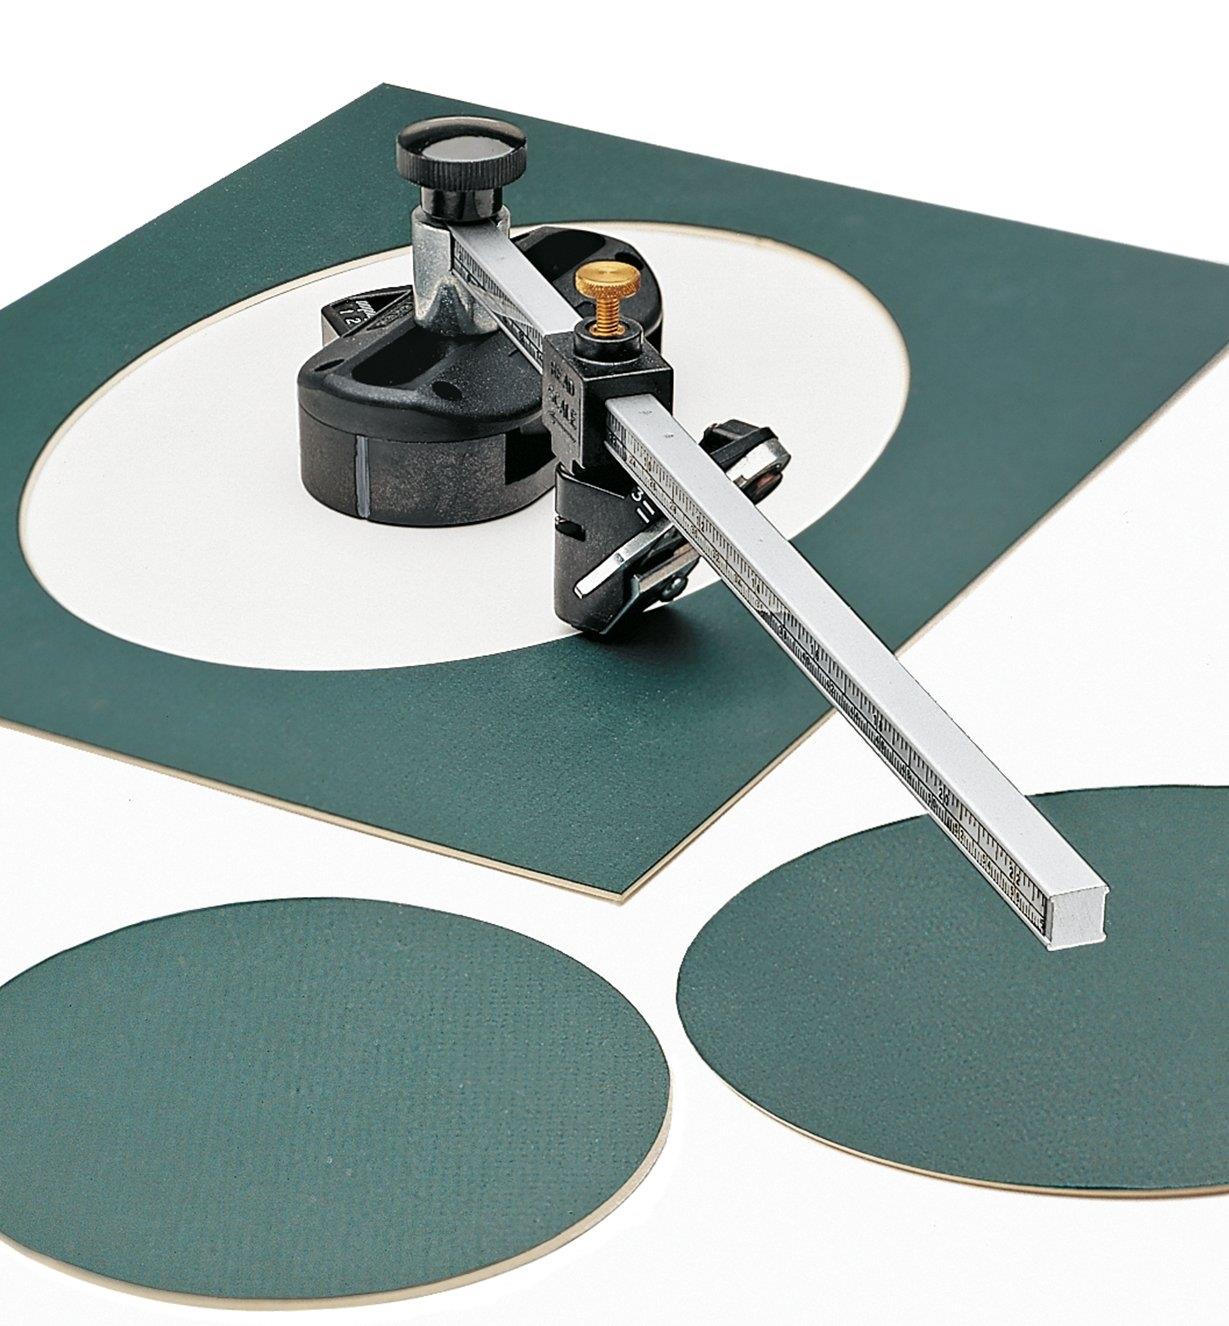 Cutting a circle out of a mat using a MatMate Oval/Circle Mat Cutter